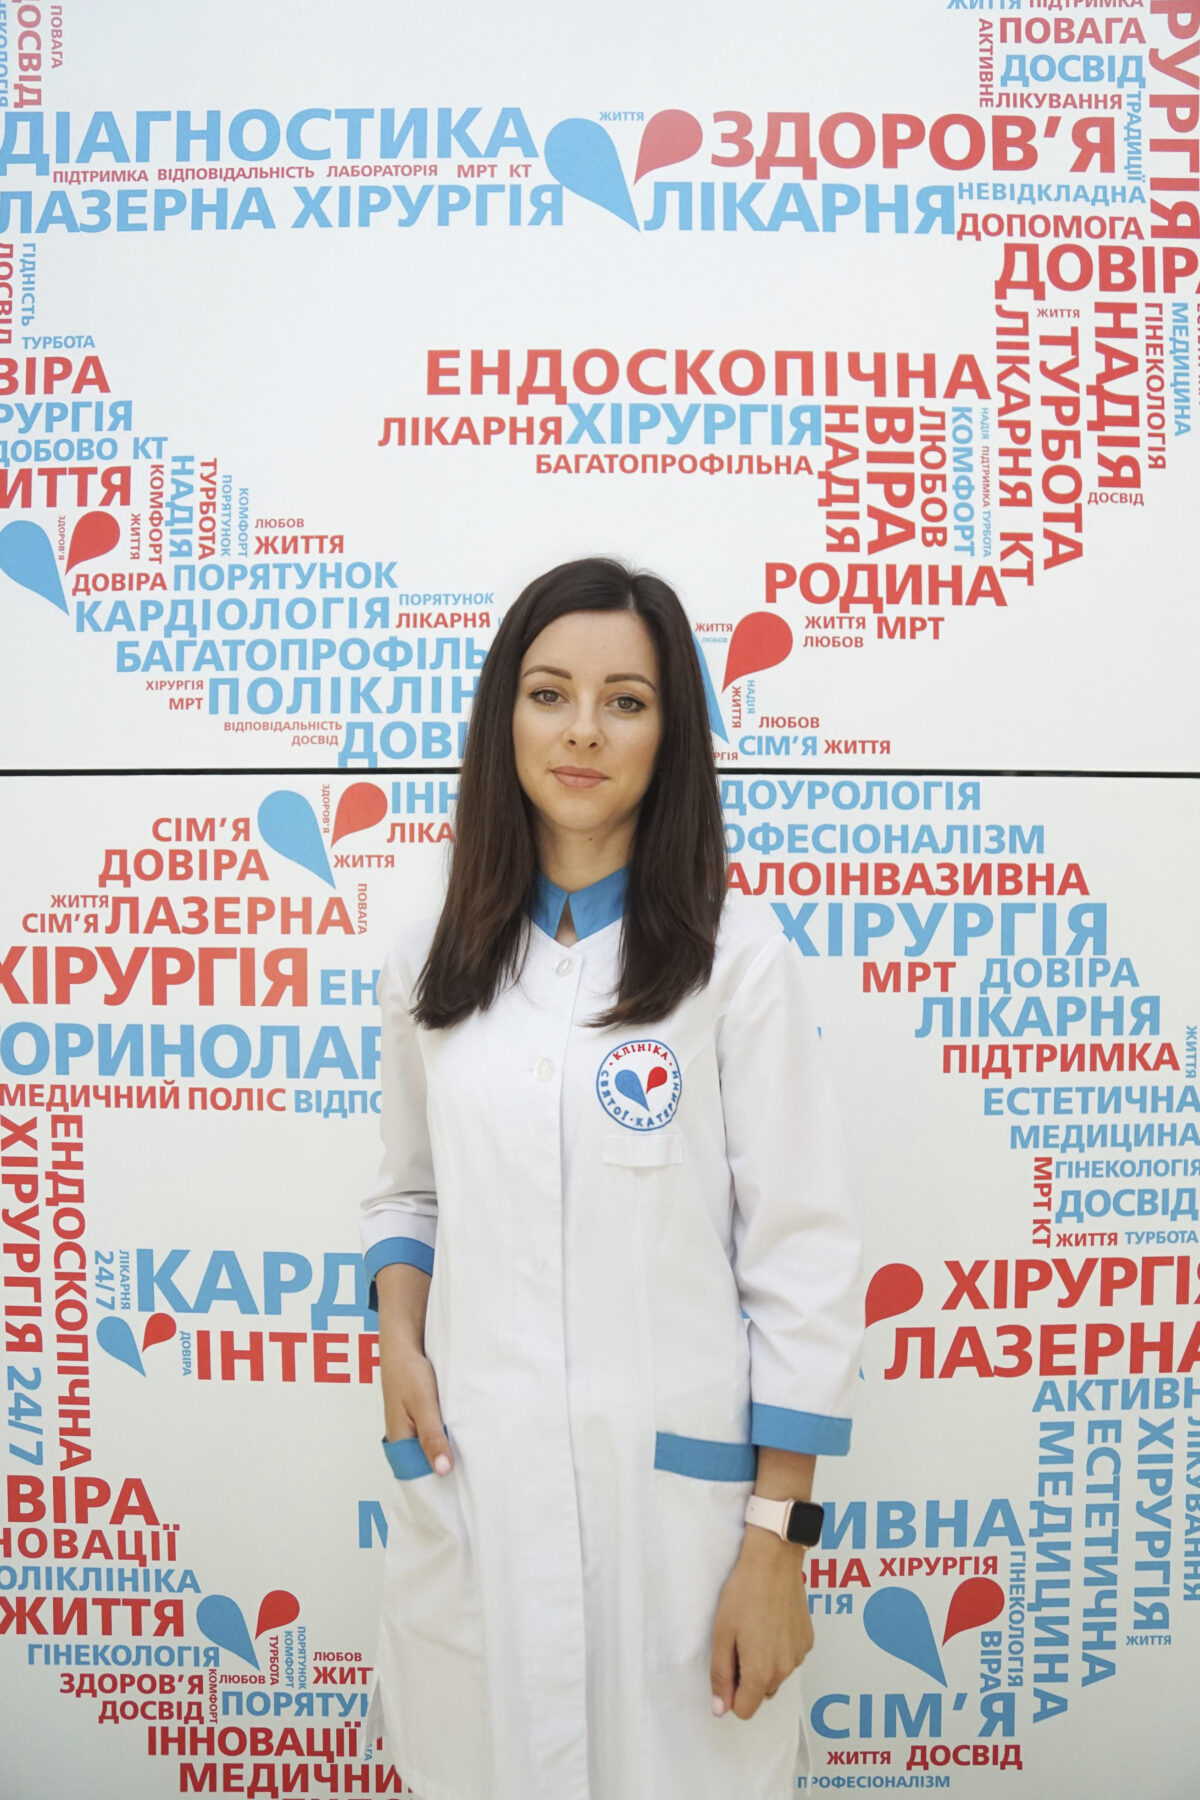 Залєвська Ірина Олександрівна - 30 - svekaterina.ua